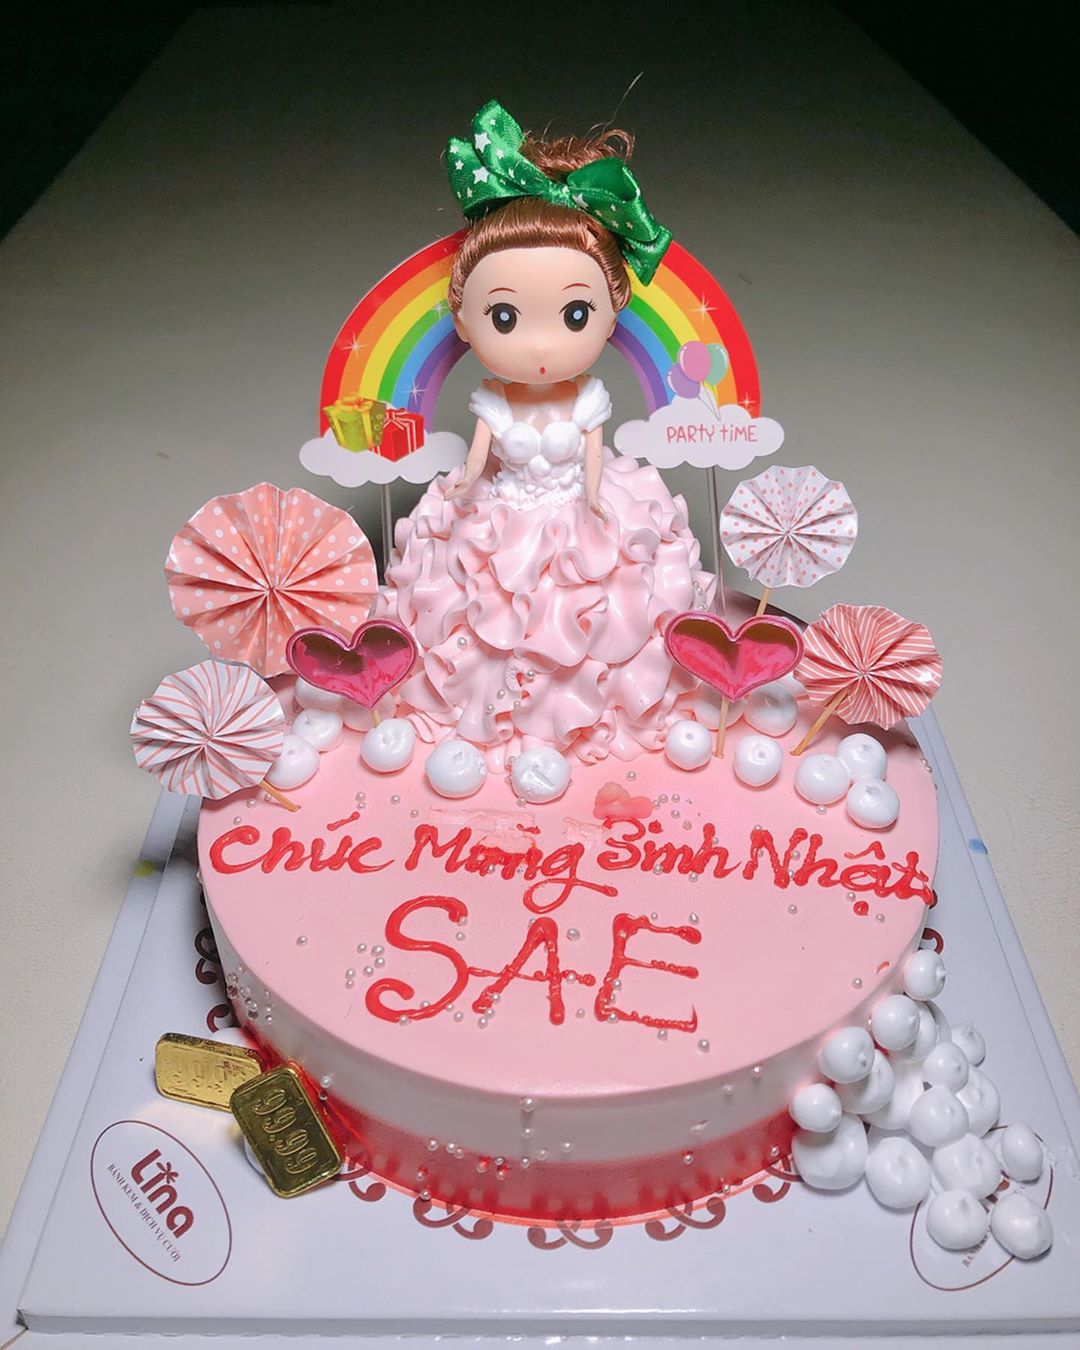 岡崎紗絵 ベトナムで誕生日を祝って頂きました いやーー嬉しい お人形までついてて可愛い 美味しく頂きました 誕生日 サプライズケーキ 嬉しい お人形ケーキ Moe Zine